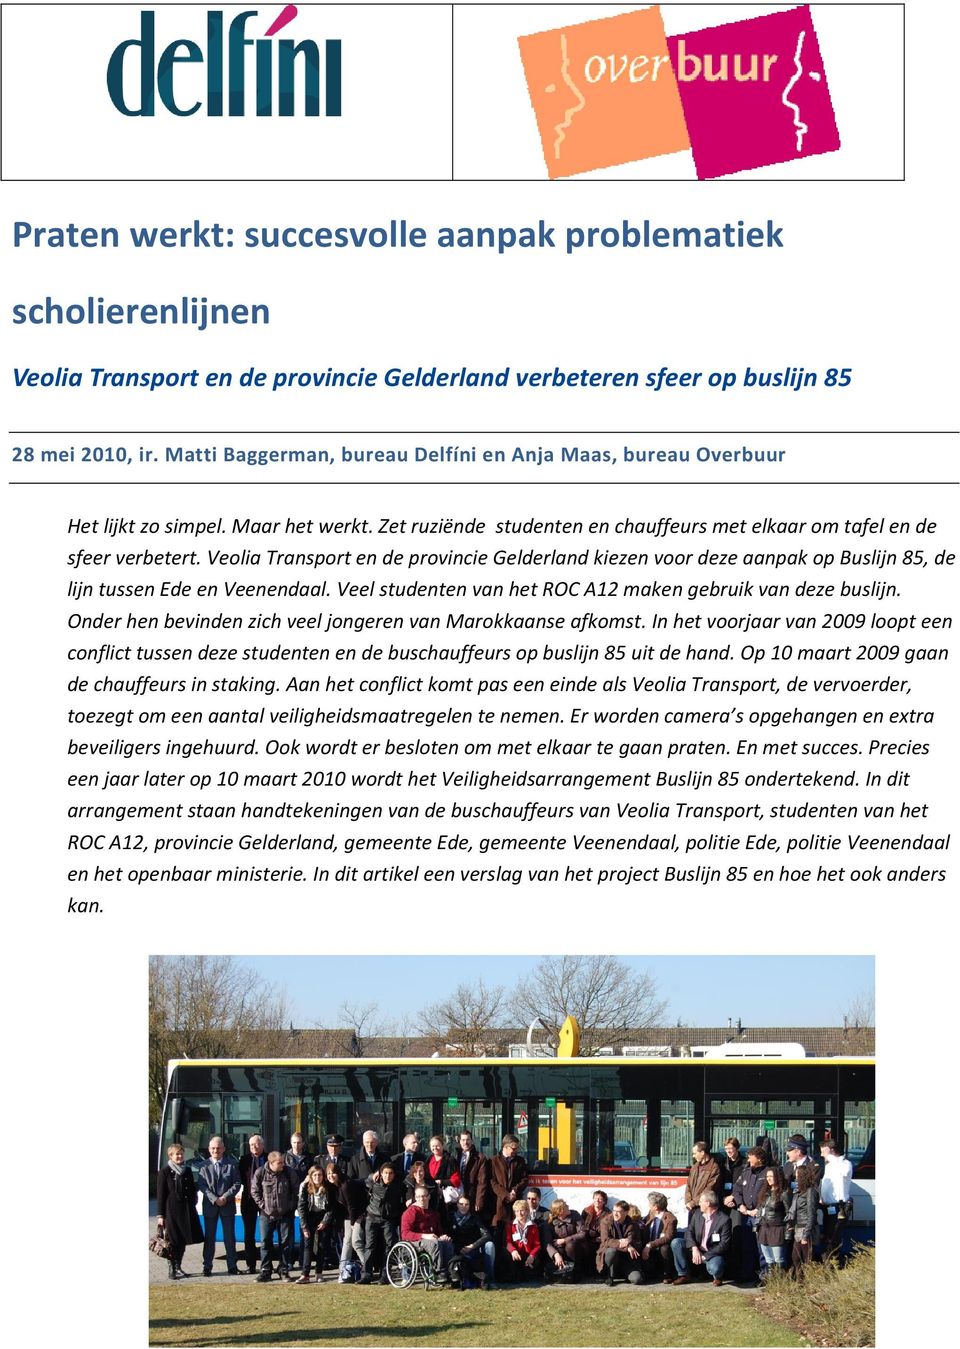 Veolia Transport en de provincie Gelderland kiezen voor deze aanpak op Buslijn 85, de lijn tussen Ede en Veenendaal. Veel studenten van het ROC A12 maken gebruik van deze buslijn.